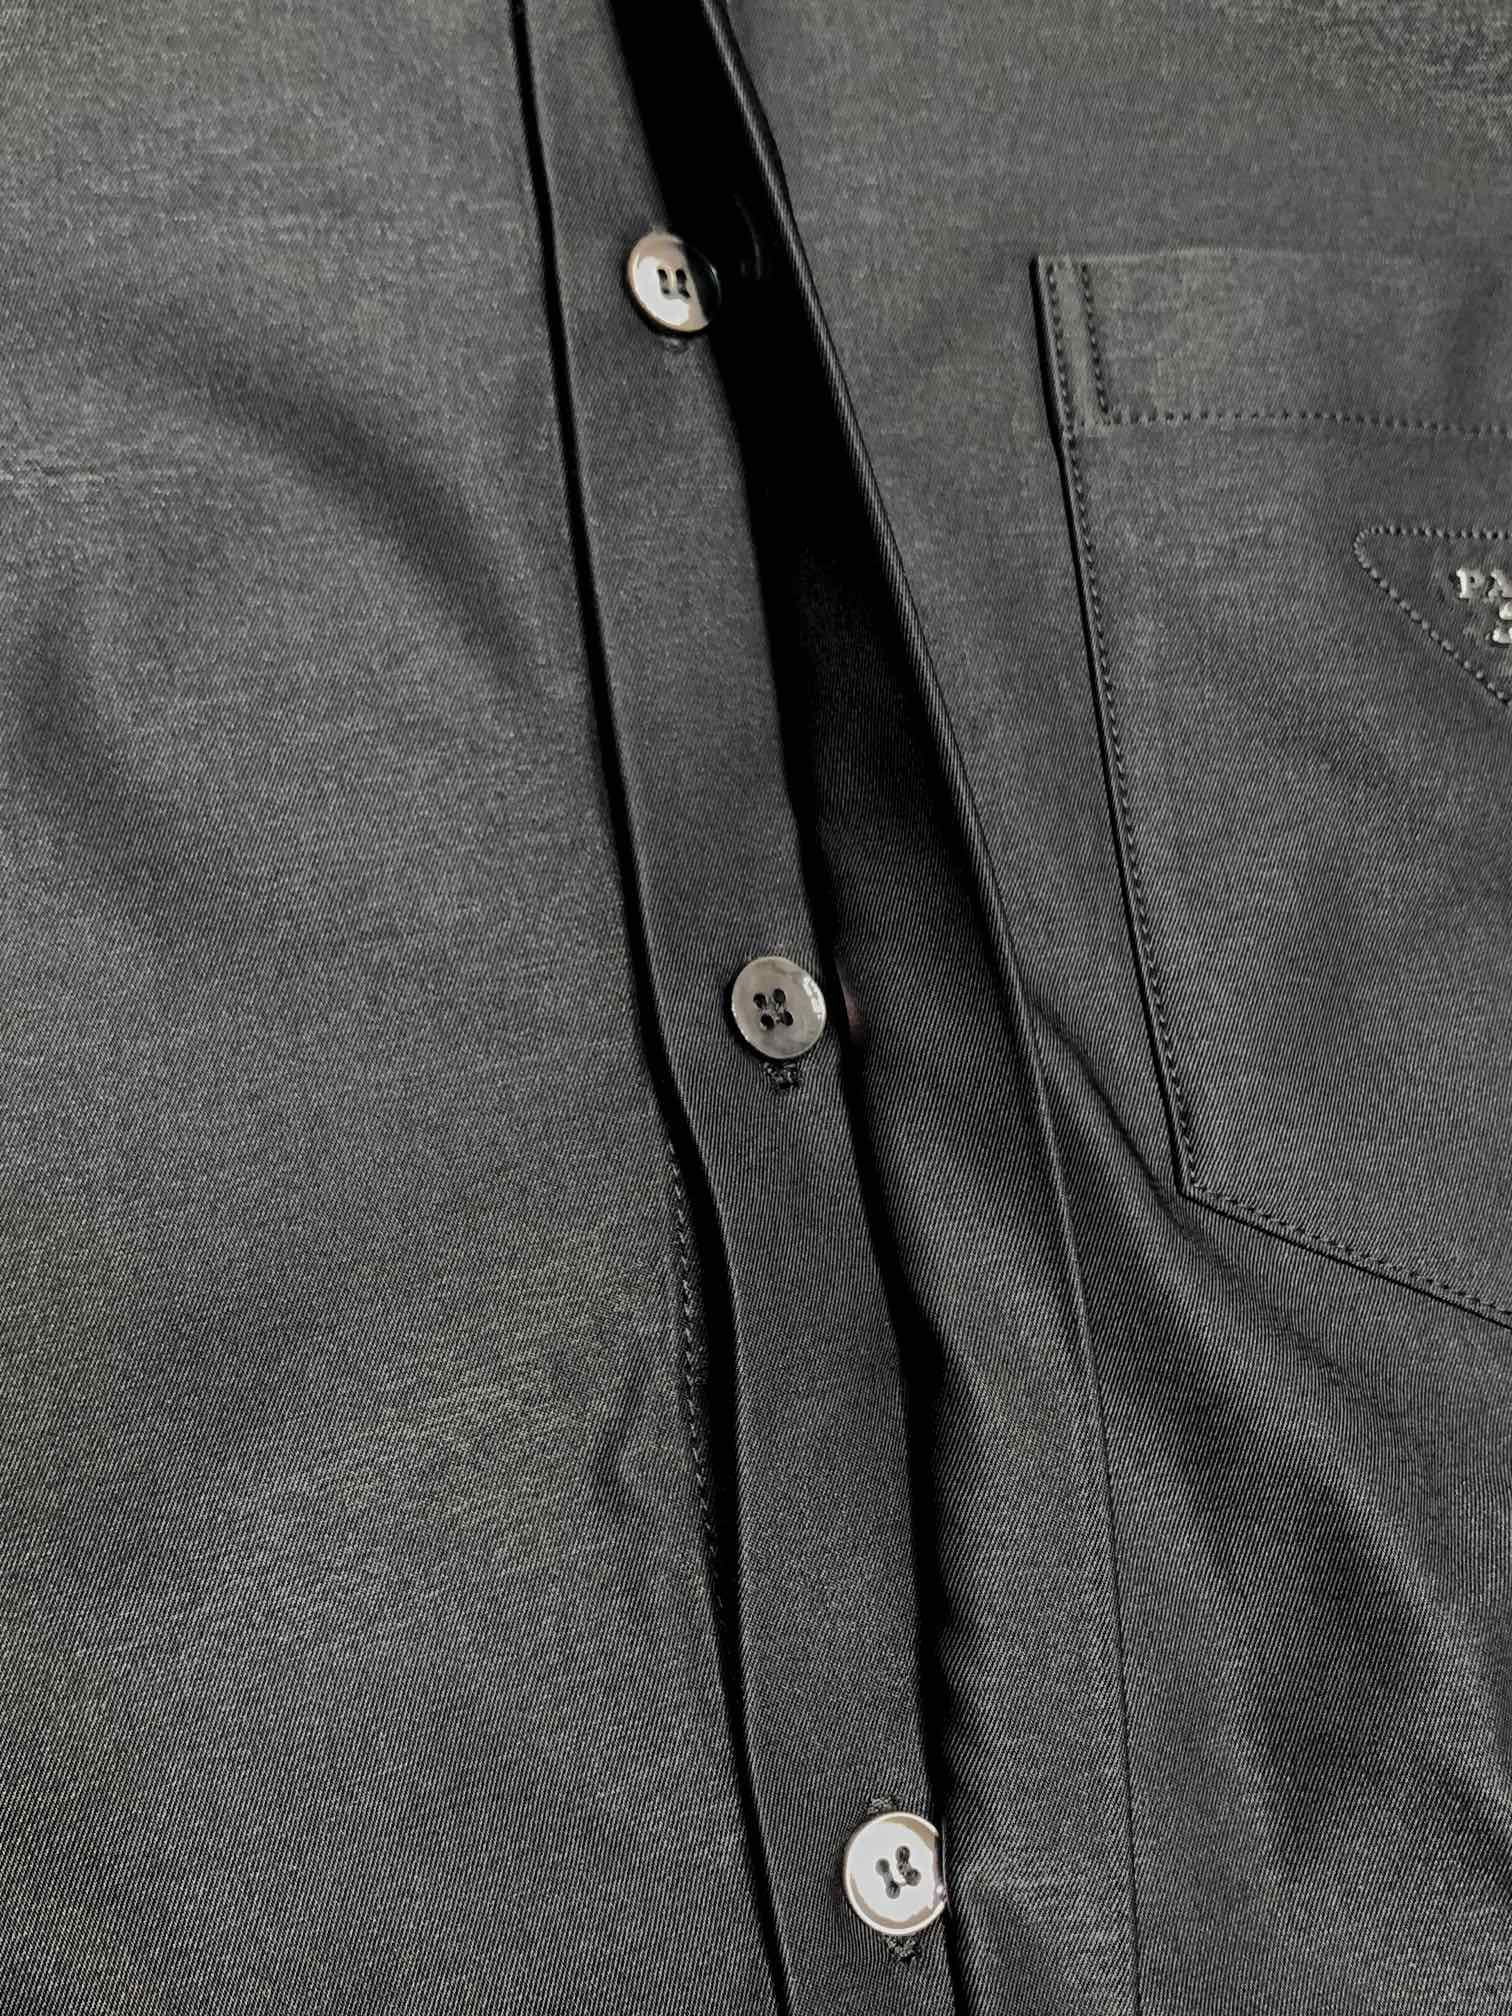 Prada普拉达独家专供最新春秋时尚翻领夹克经典设计感与颜值爆棚的外套品质更是无法挑剔品控可以直接入手不